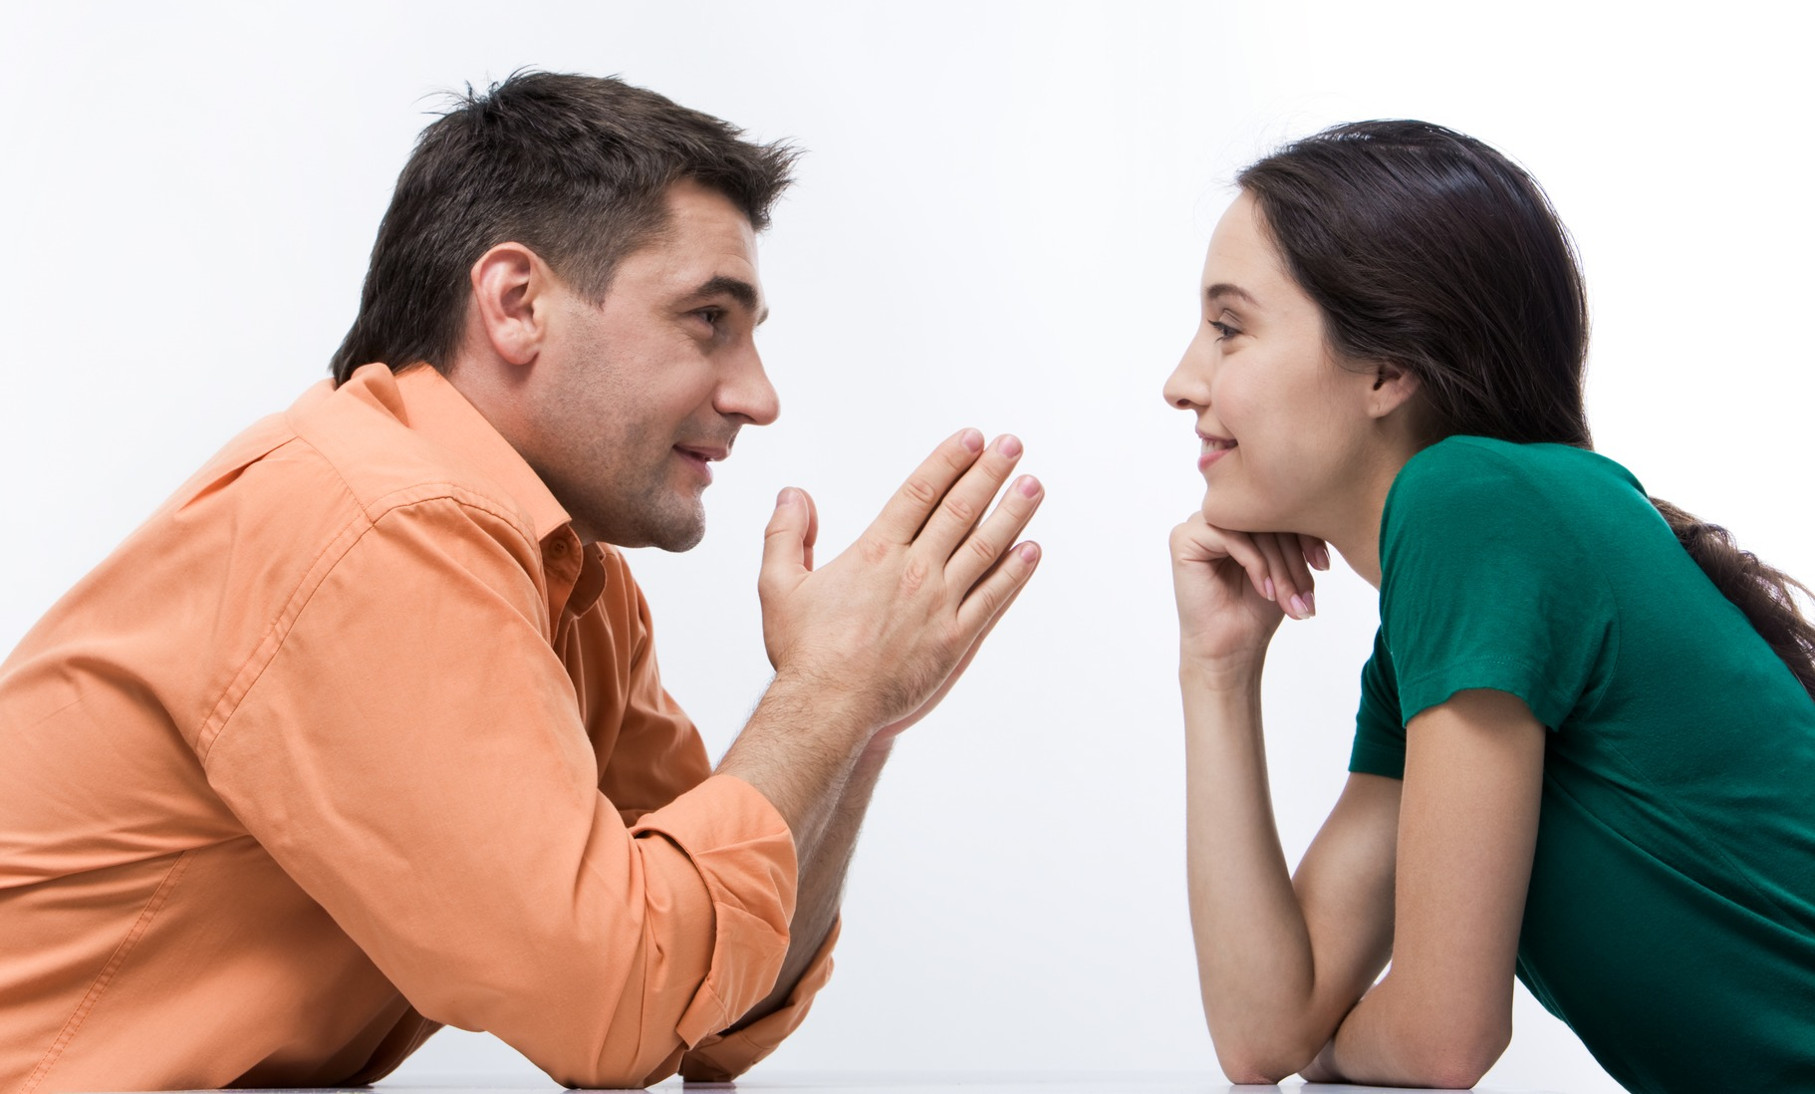 Можно слышать разговор в. Разговор между мужчиной и женщиной. Общение людей. Взаимопонимание в общении. Беседа мужчины и женщины.